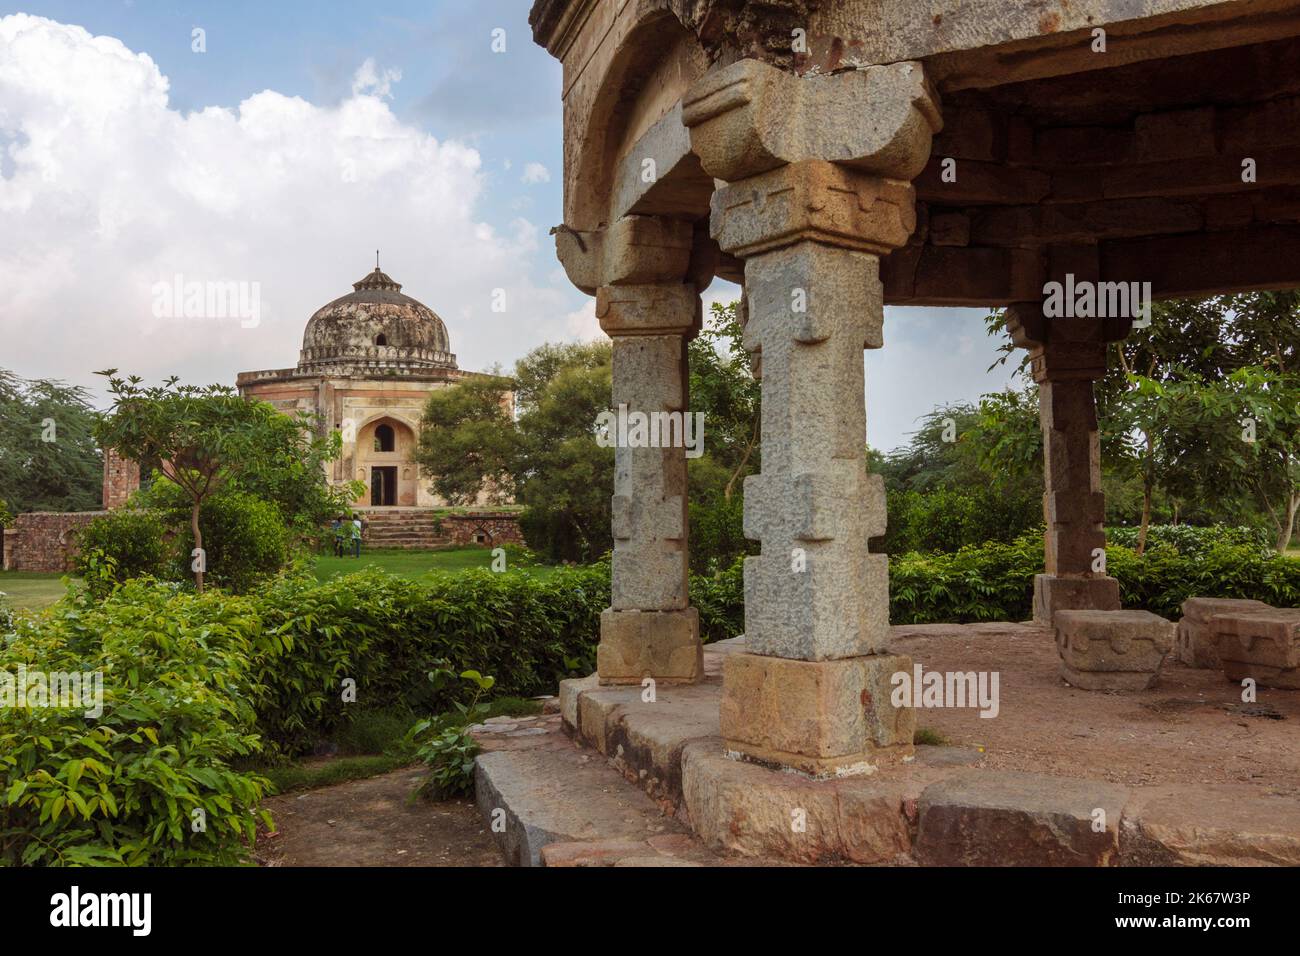 Dehli, India : Tomba del 16th° secolo di Quli Khan all'interno del Parco Archeologico di Mehrauli. La tomba ottagonale fu poi rimodellata come la casa di Metcalfe, A. Foto Stock